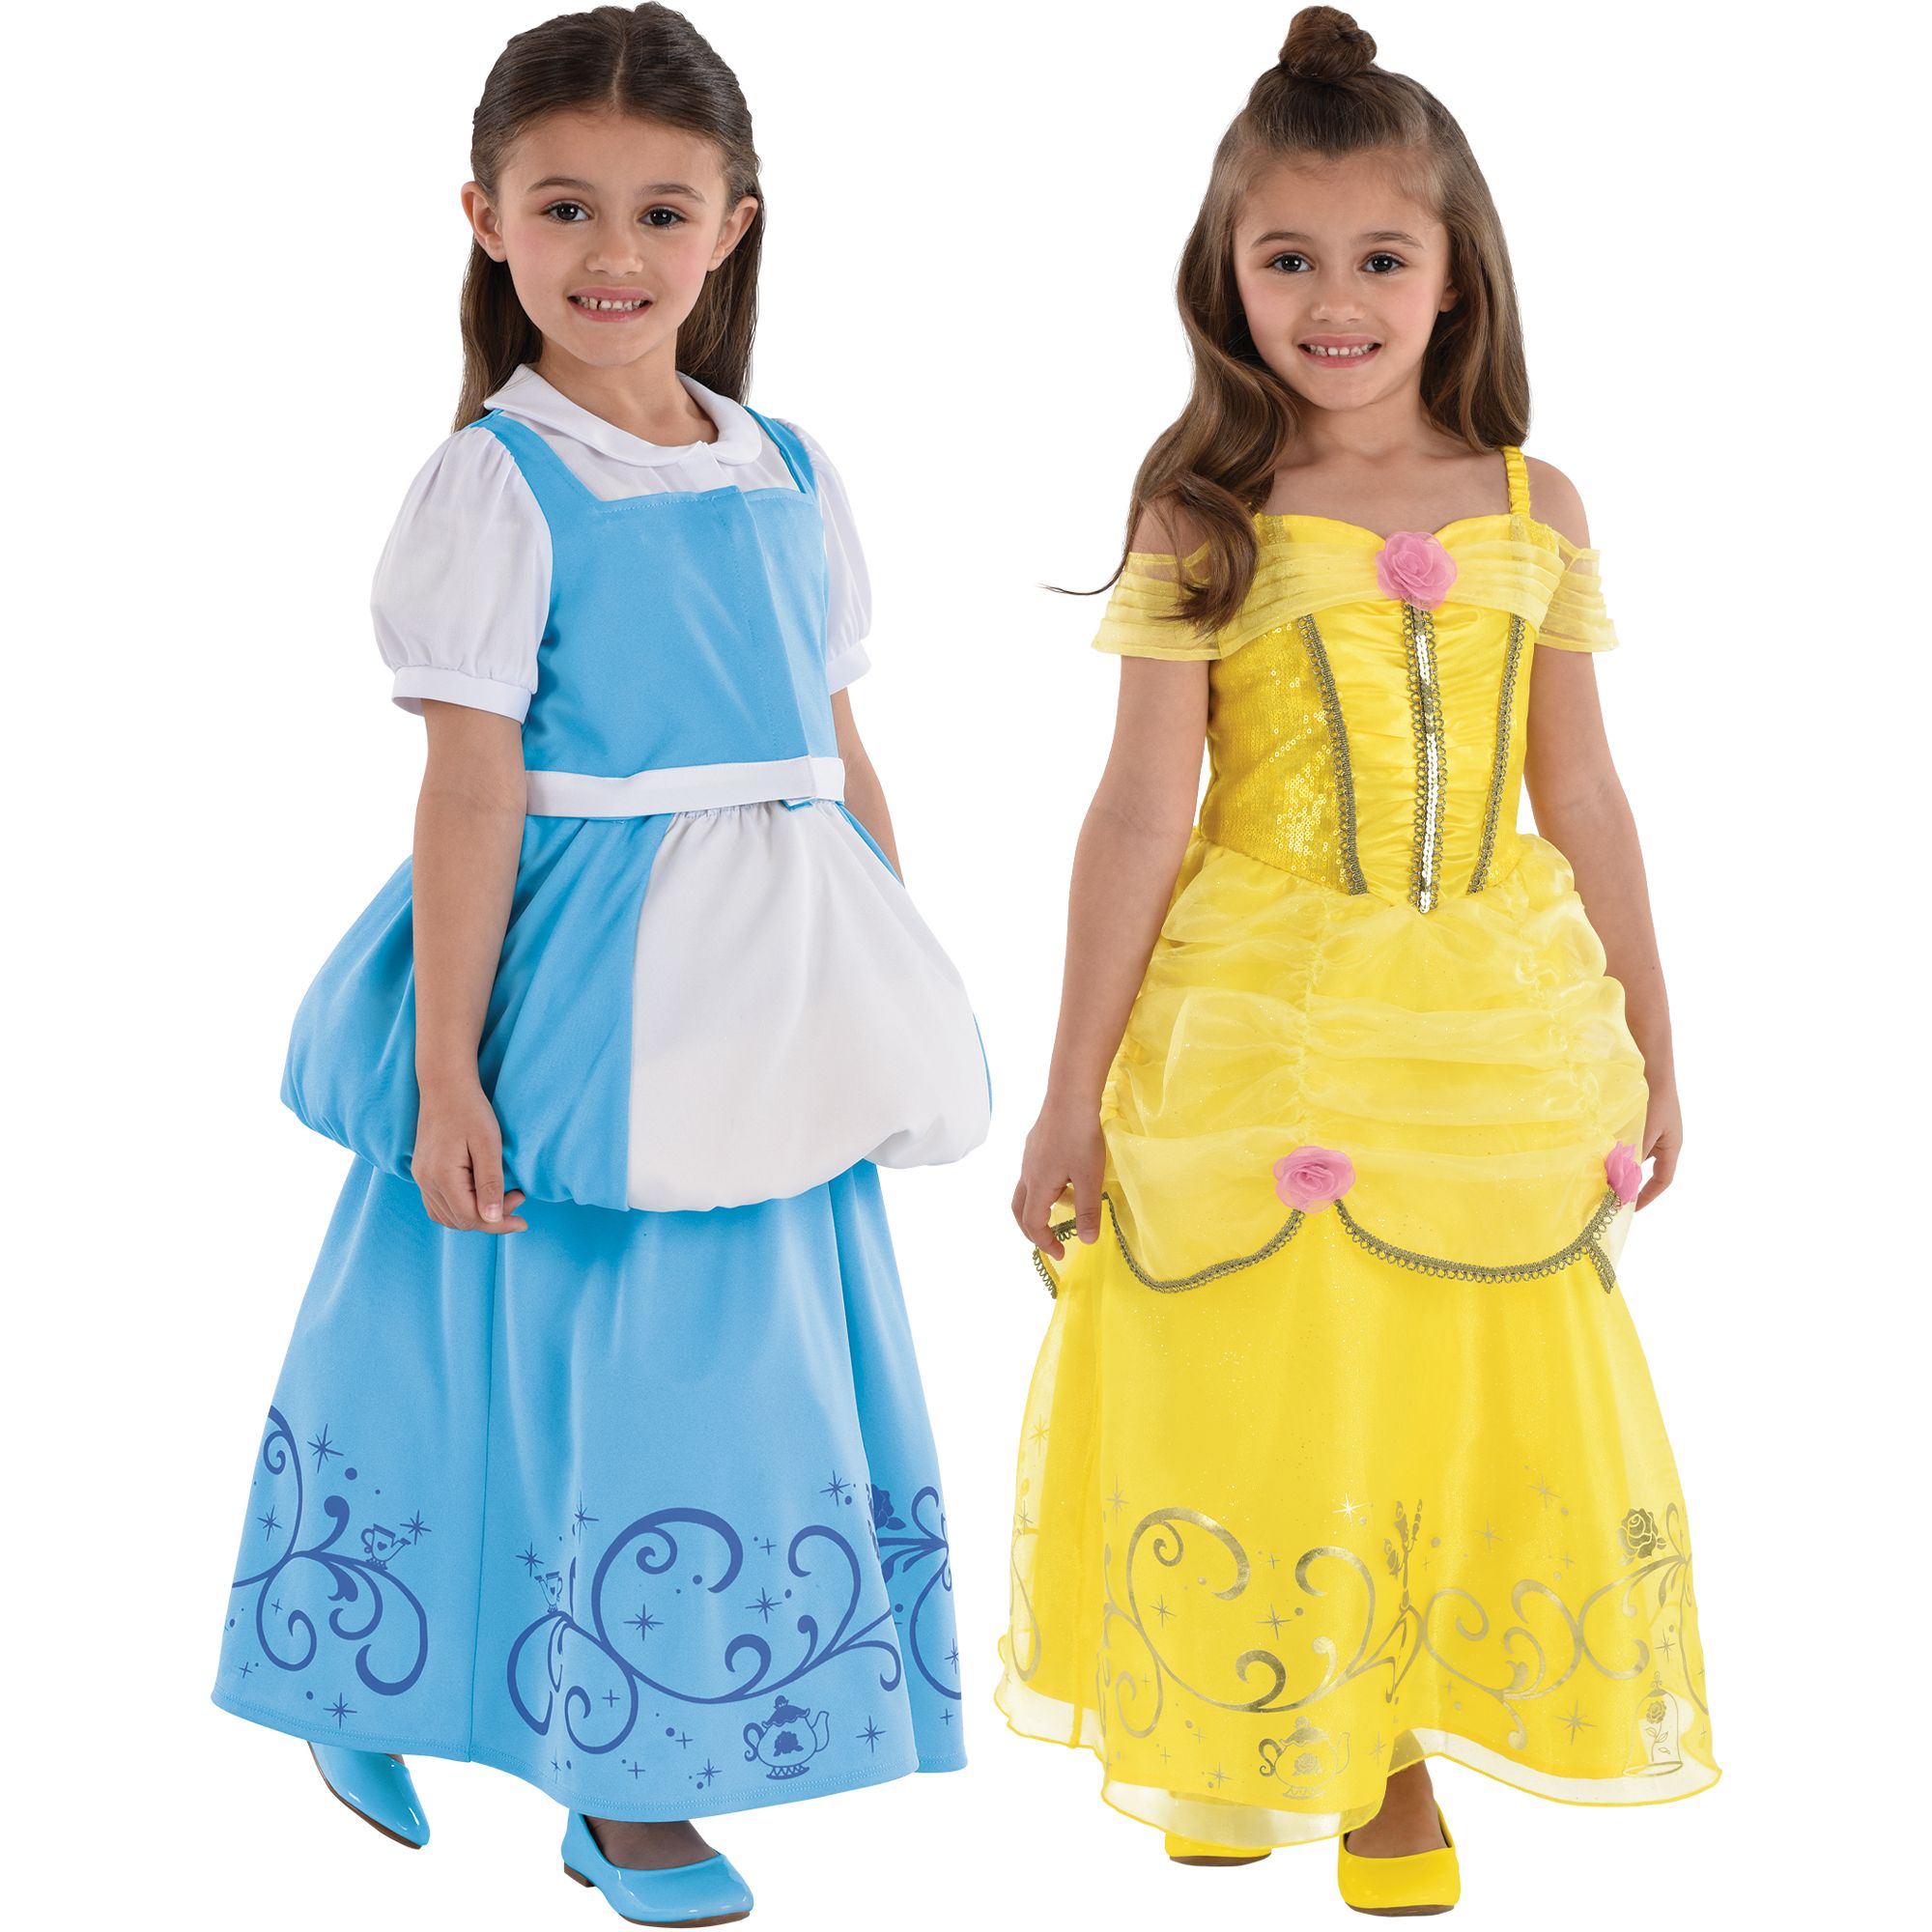 Costume de Disney Cendrillon, toute petite et enfant, robe de